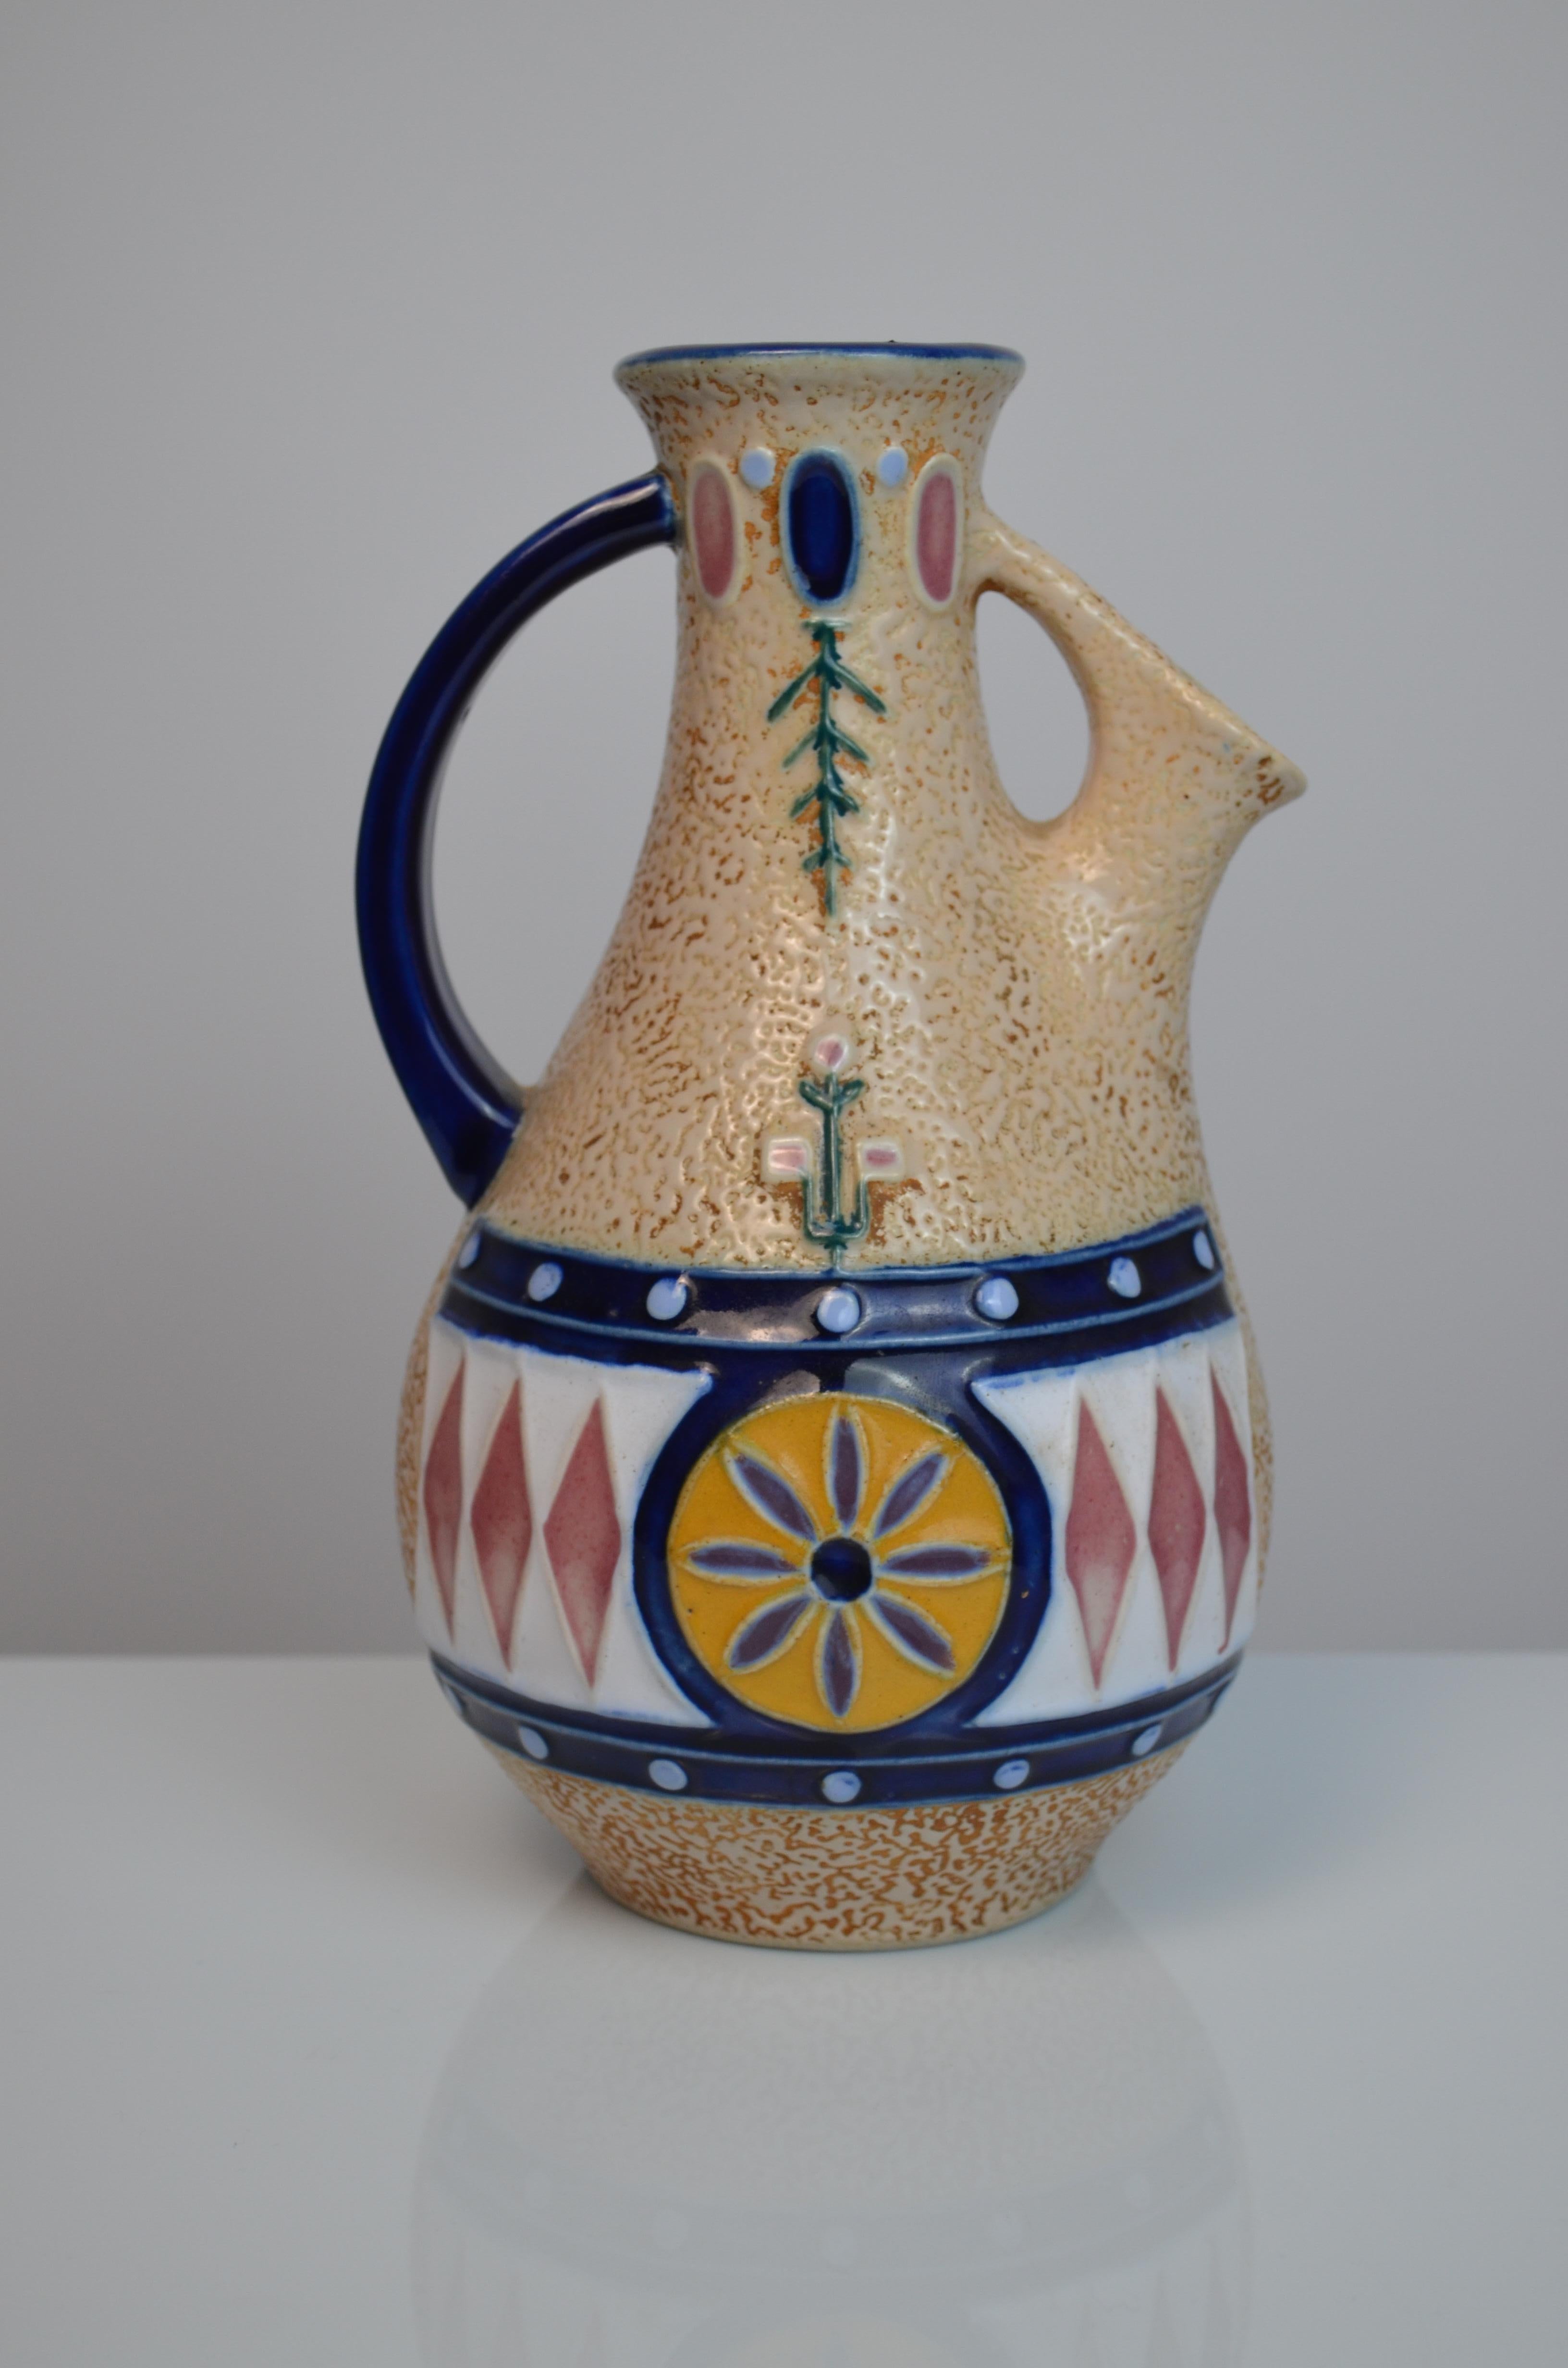 Pichet en céramique émaillée tchécoslovaque de la manufacture Amphora, années 1920-1930
Style Art déco.
Etat et Design/One étonnants par rapport à son âge.
Signé sous la base.